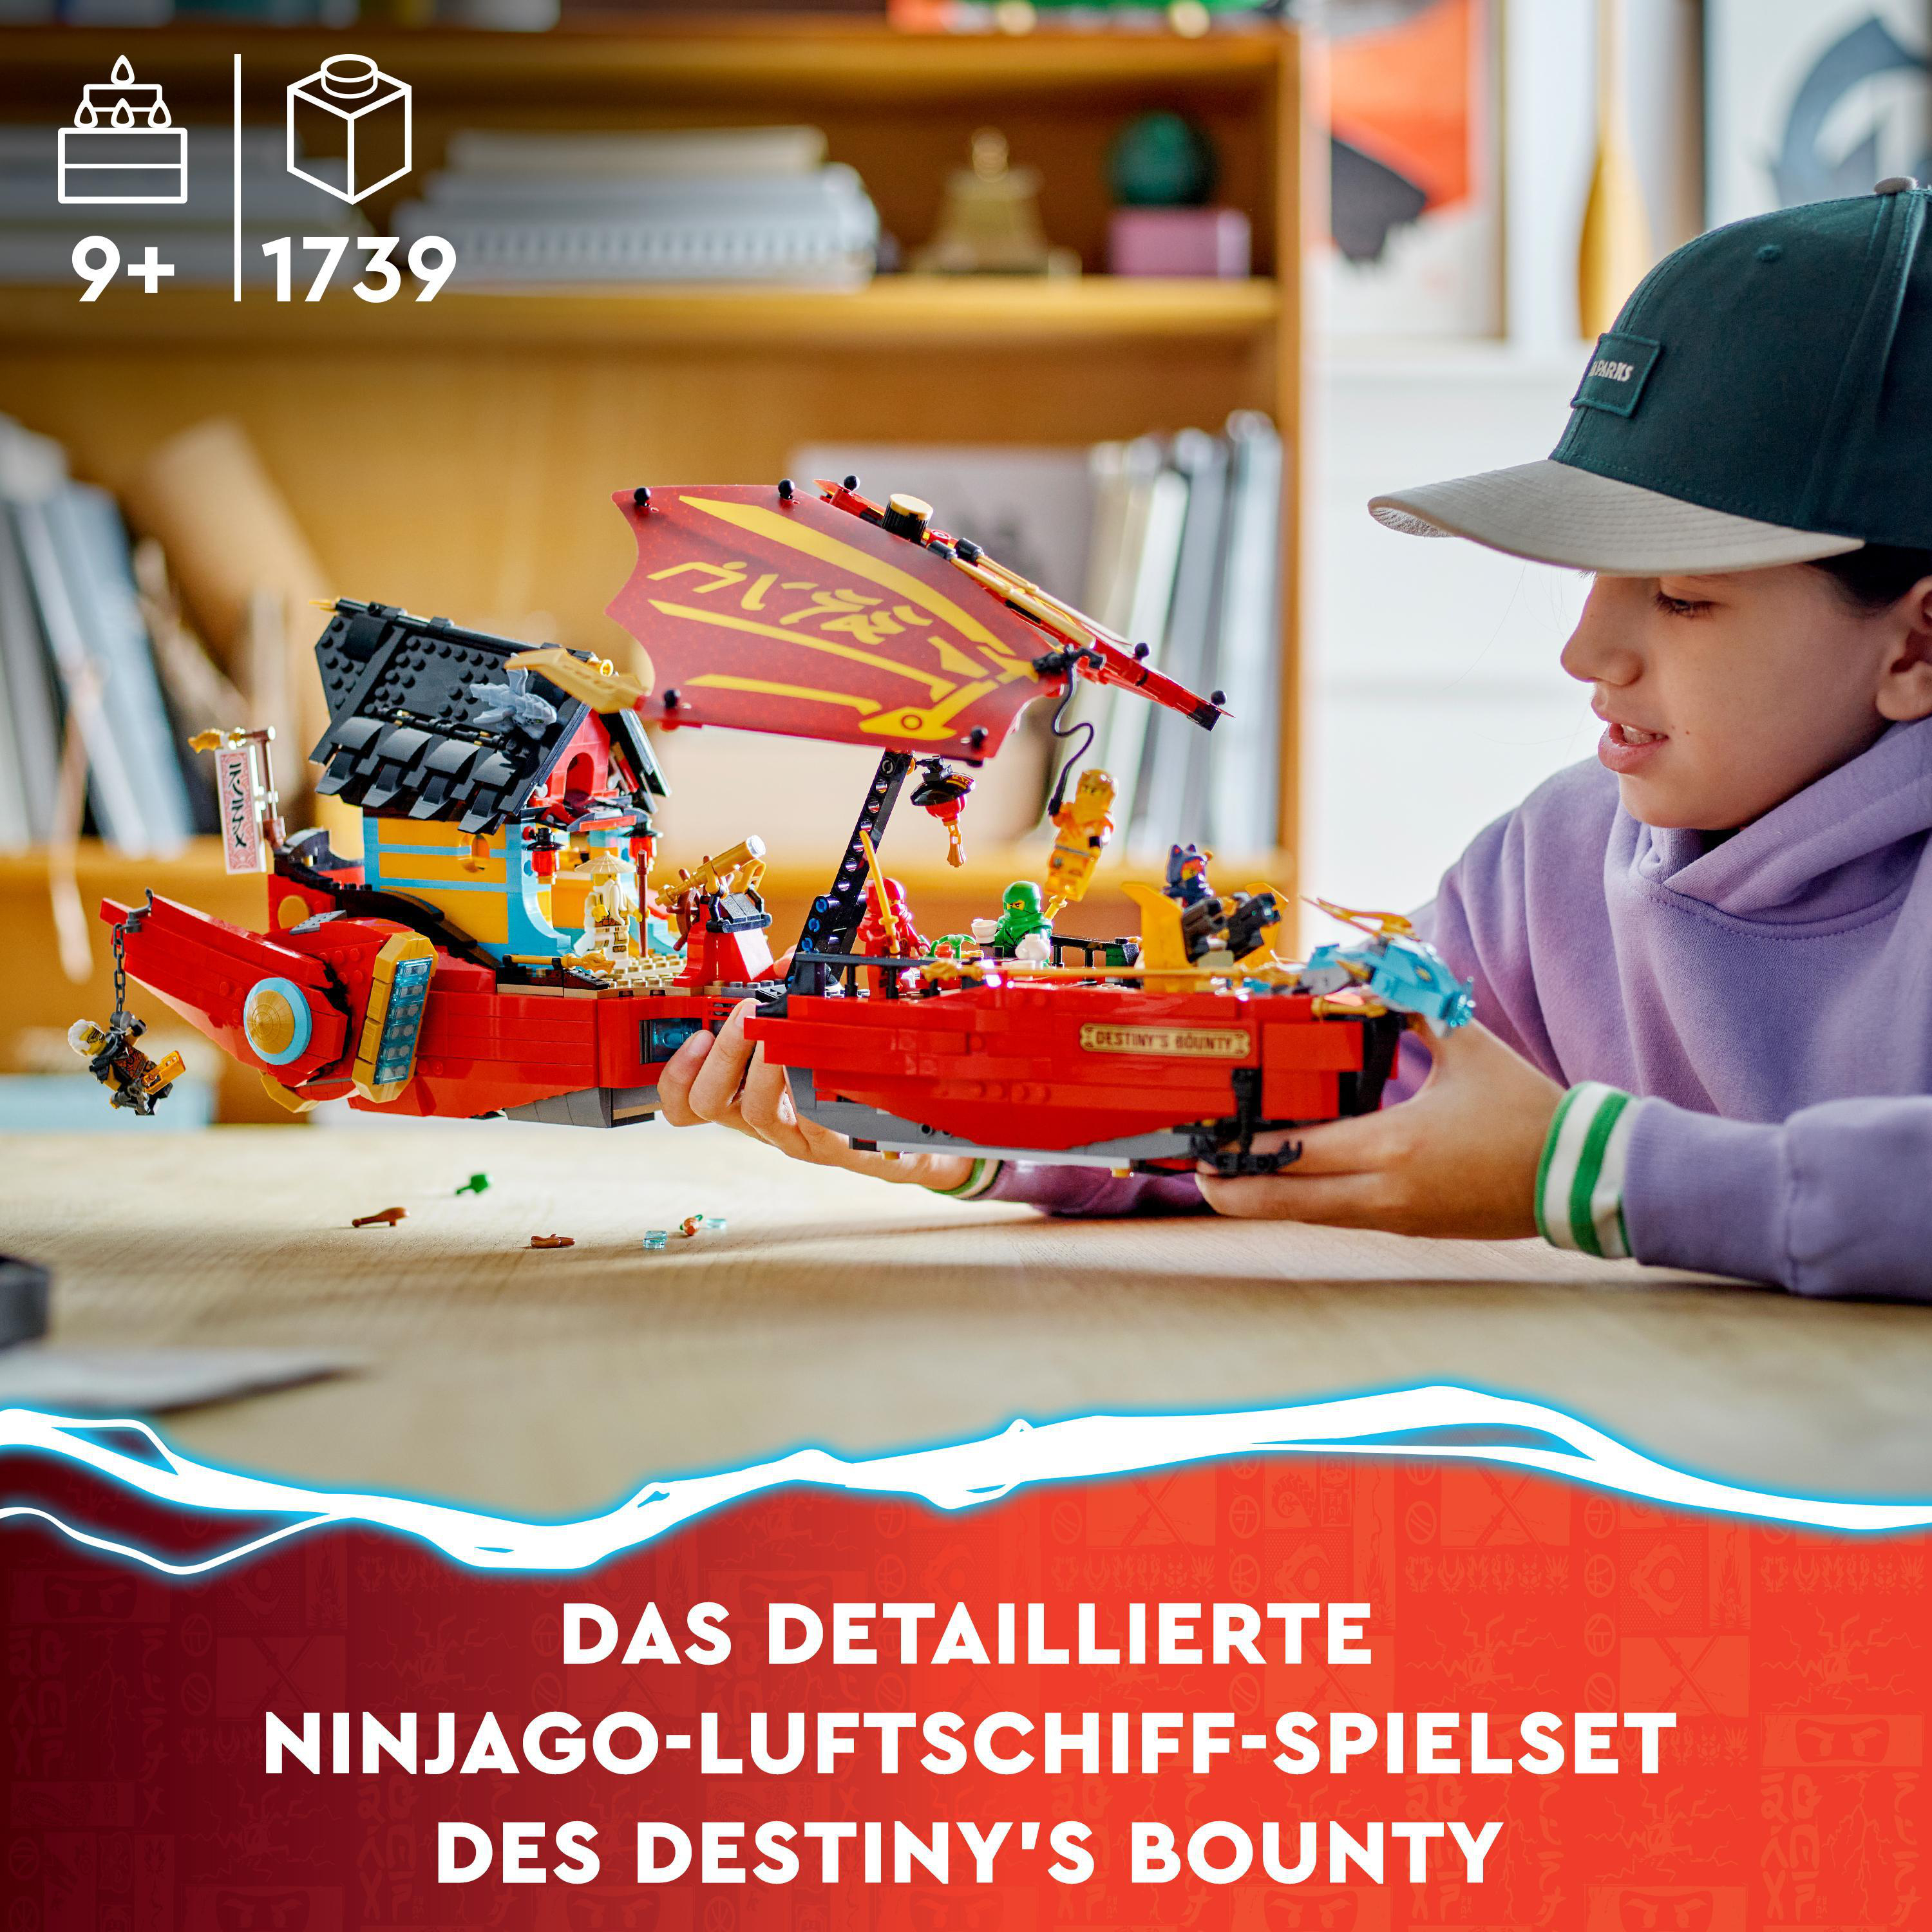 LEGO NINJAGO 71797 Ninja-Flugsegler mit der Mehrfarbig Zeit Wettlauf im Bausatz